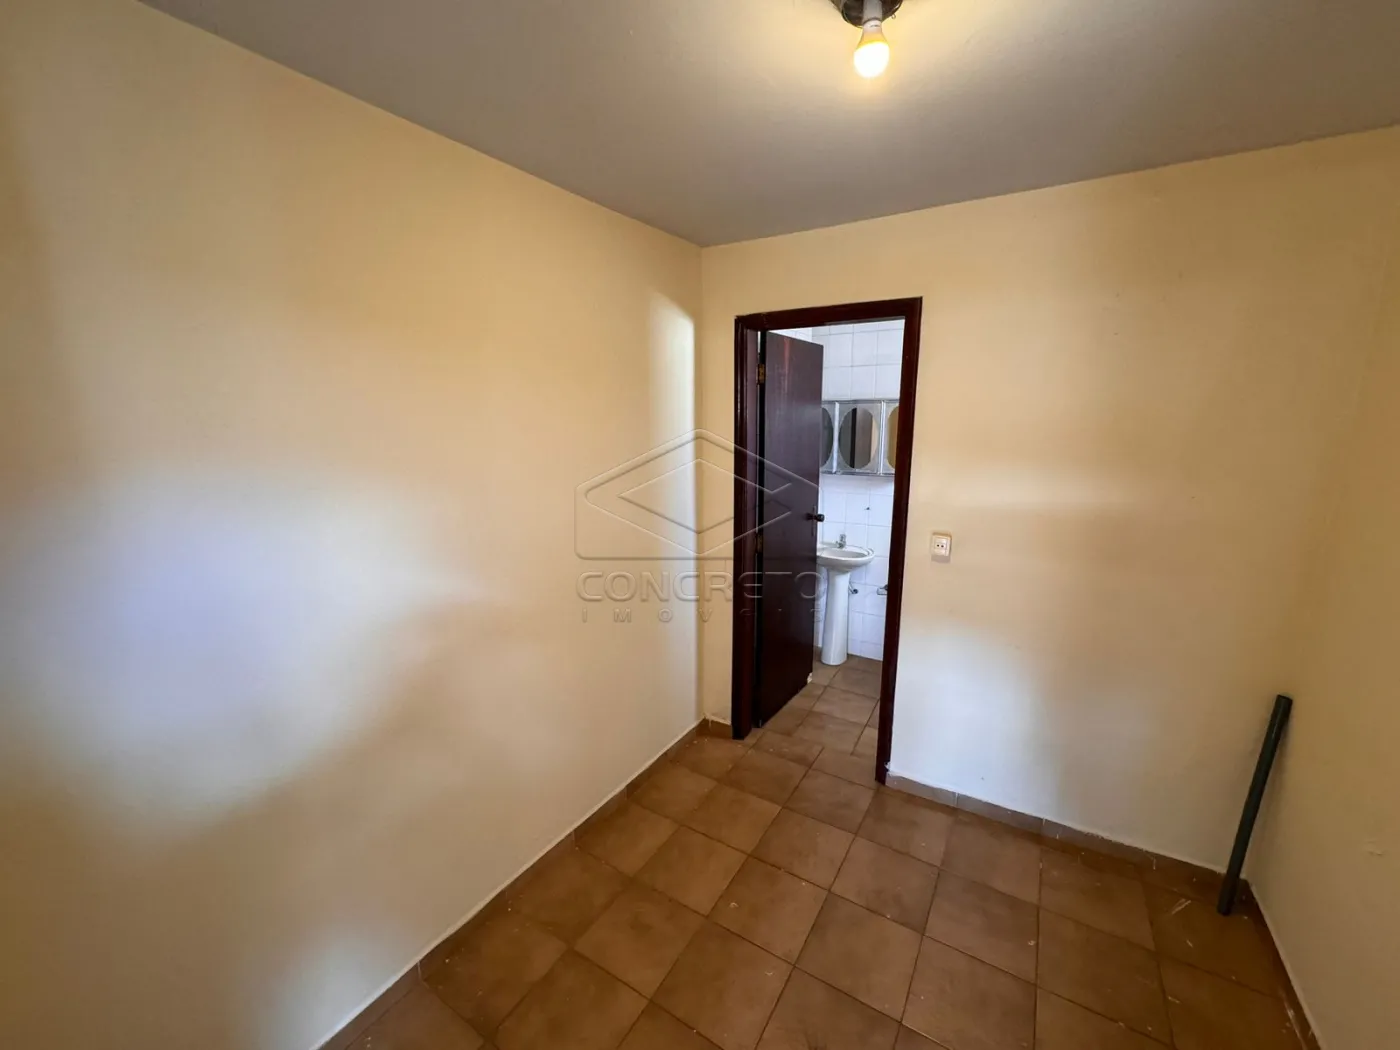 Alugar Casa / Residência em Jaú R$ 2.600,00 - Foto 13